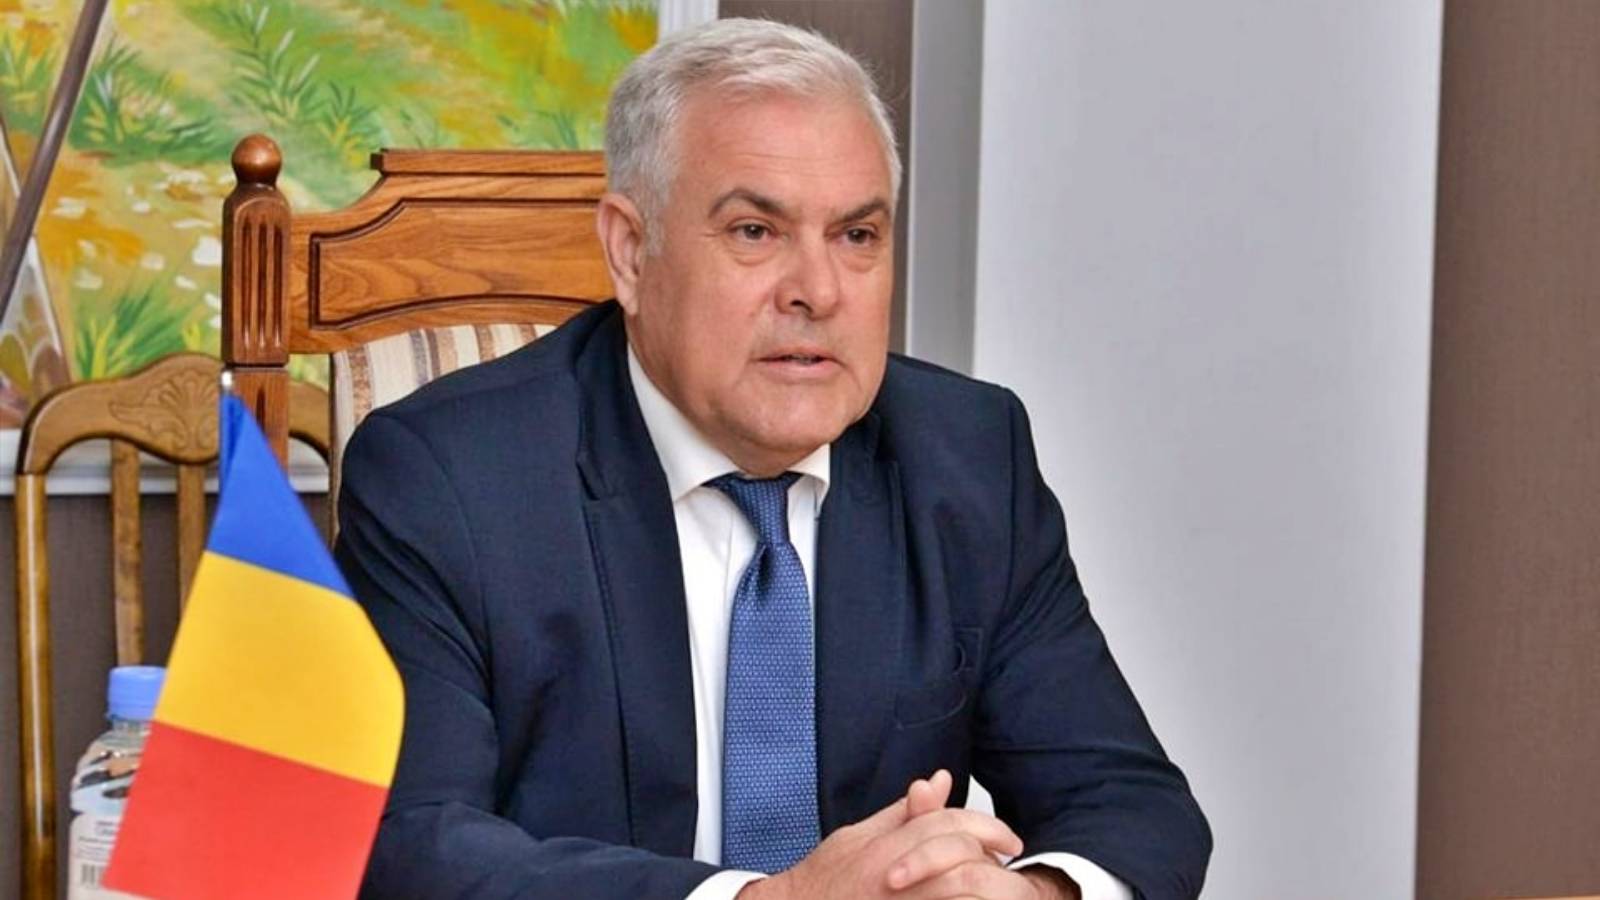 Ministrul Apararii Anuntul Oficial ULTIMA ORA Romani Maia Sandu Republica Moldova